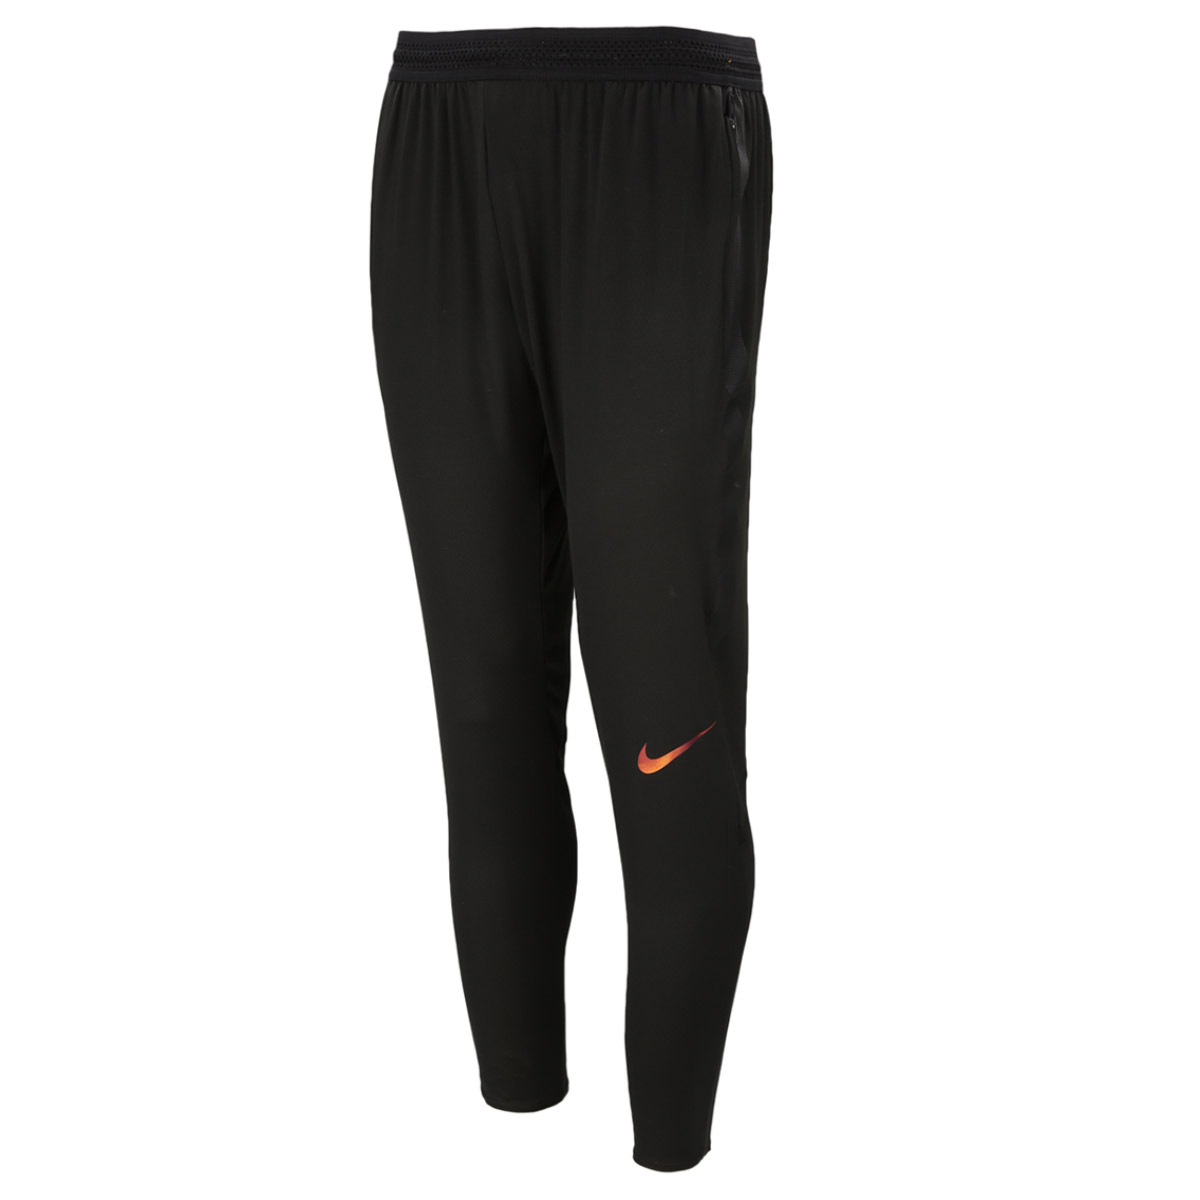 Pantalon Nike Strike Flex | Dexter